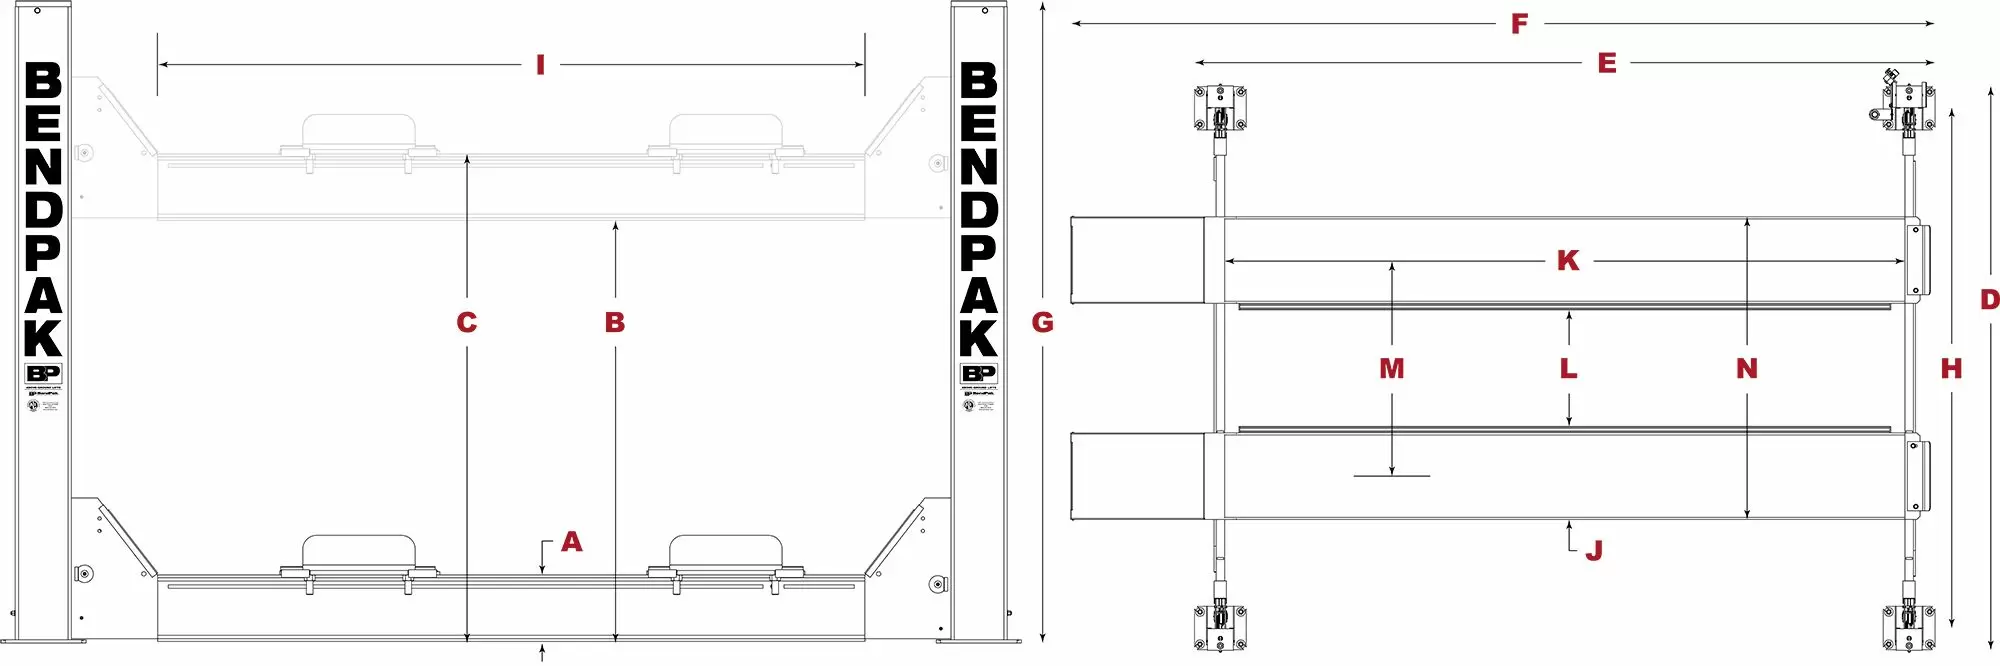 BendPak-Heavy-Duty-Four-Post-Lift-Specifications-Diagram_jpg